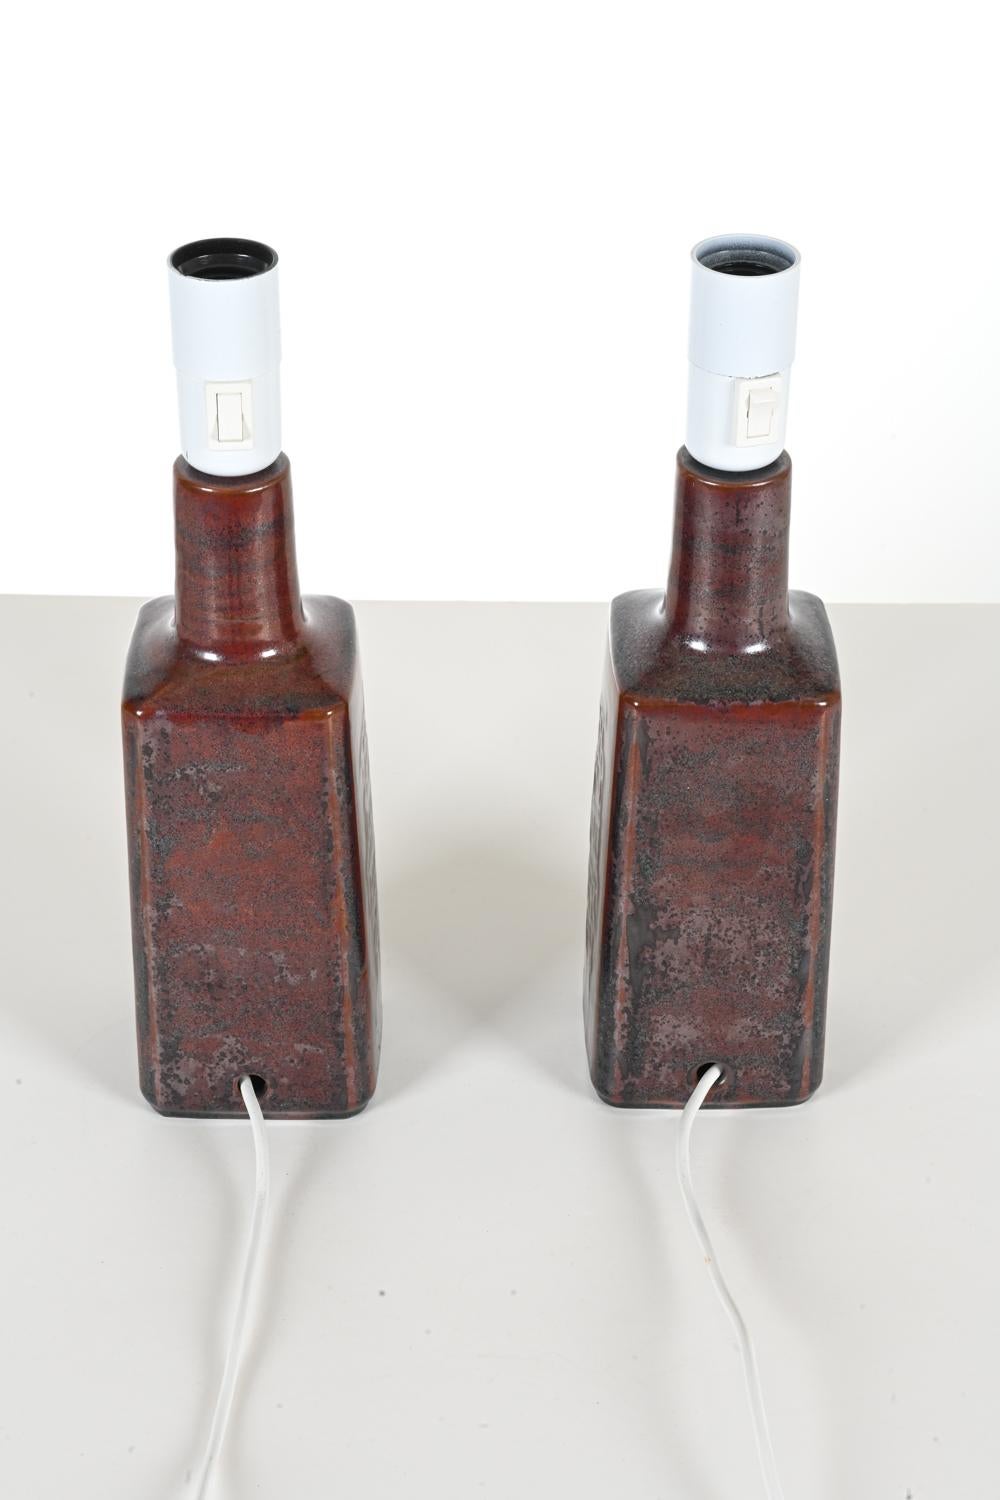 Pair of Danish Studio Ceramic Table Lamps by Désirée Stentøj For Sale 1